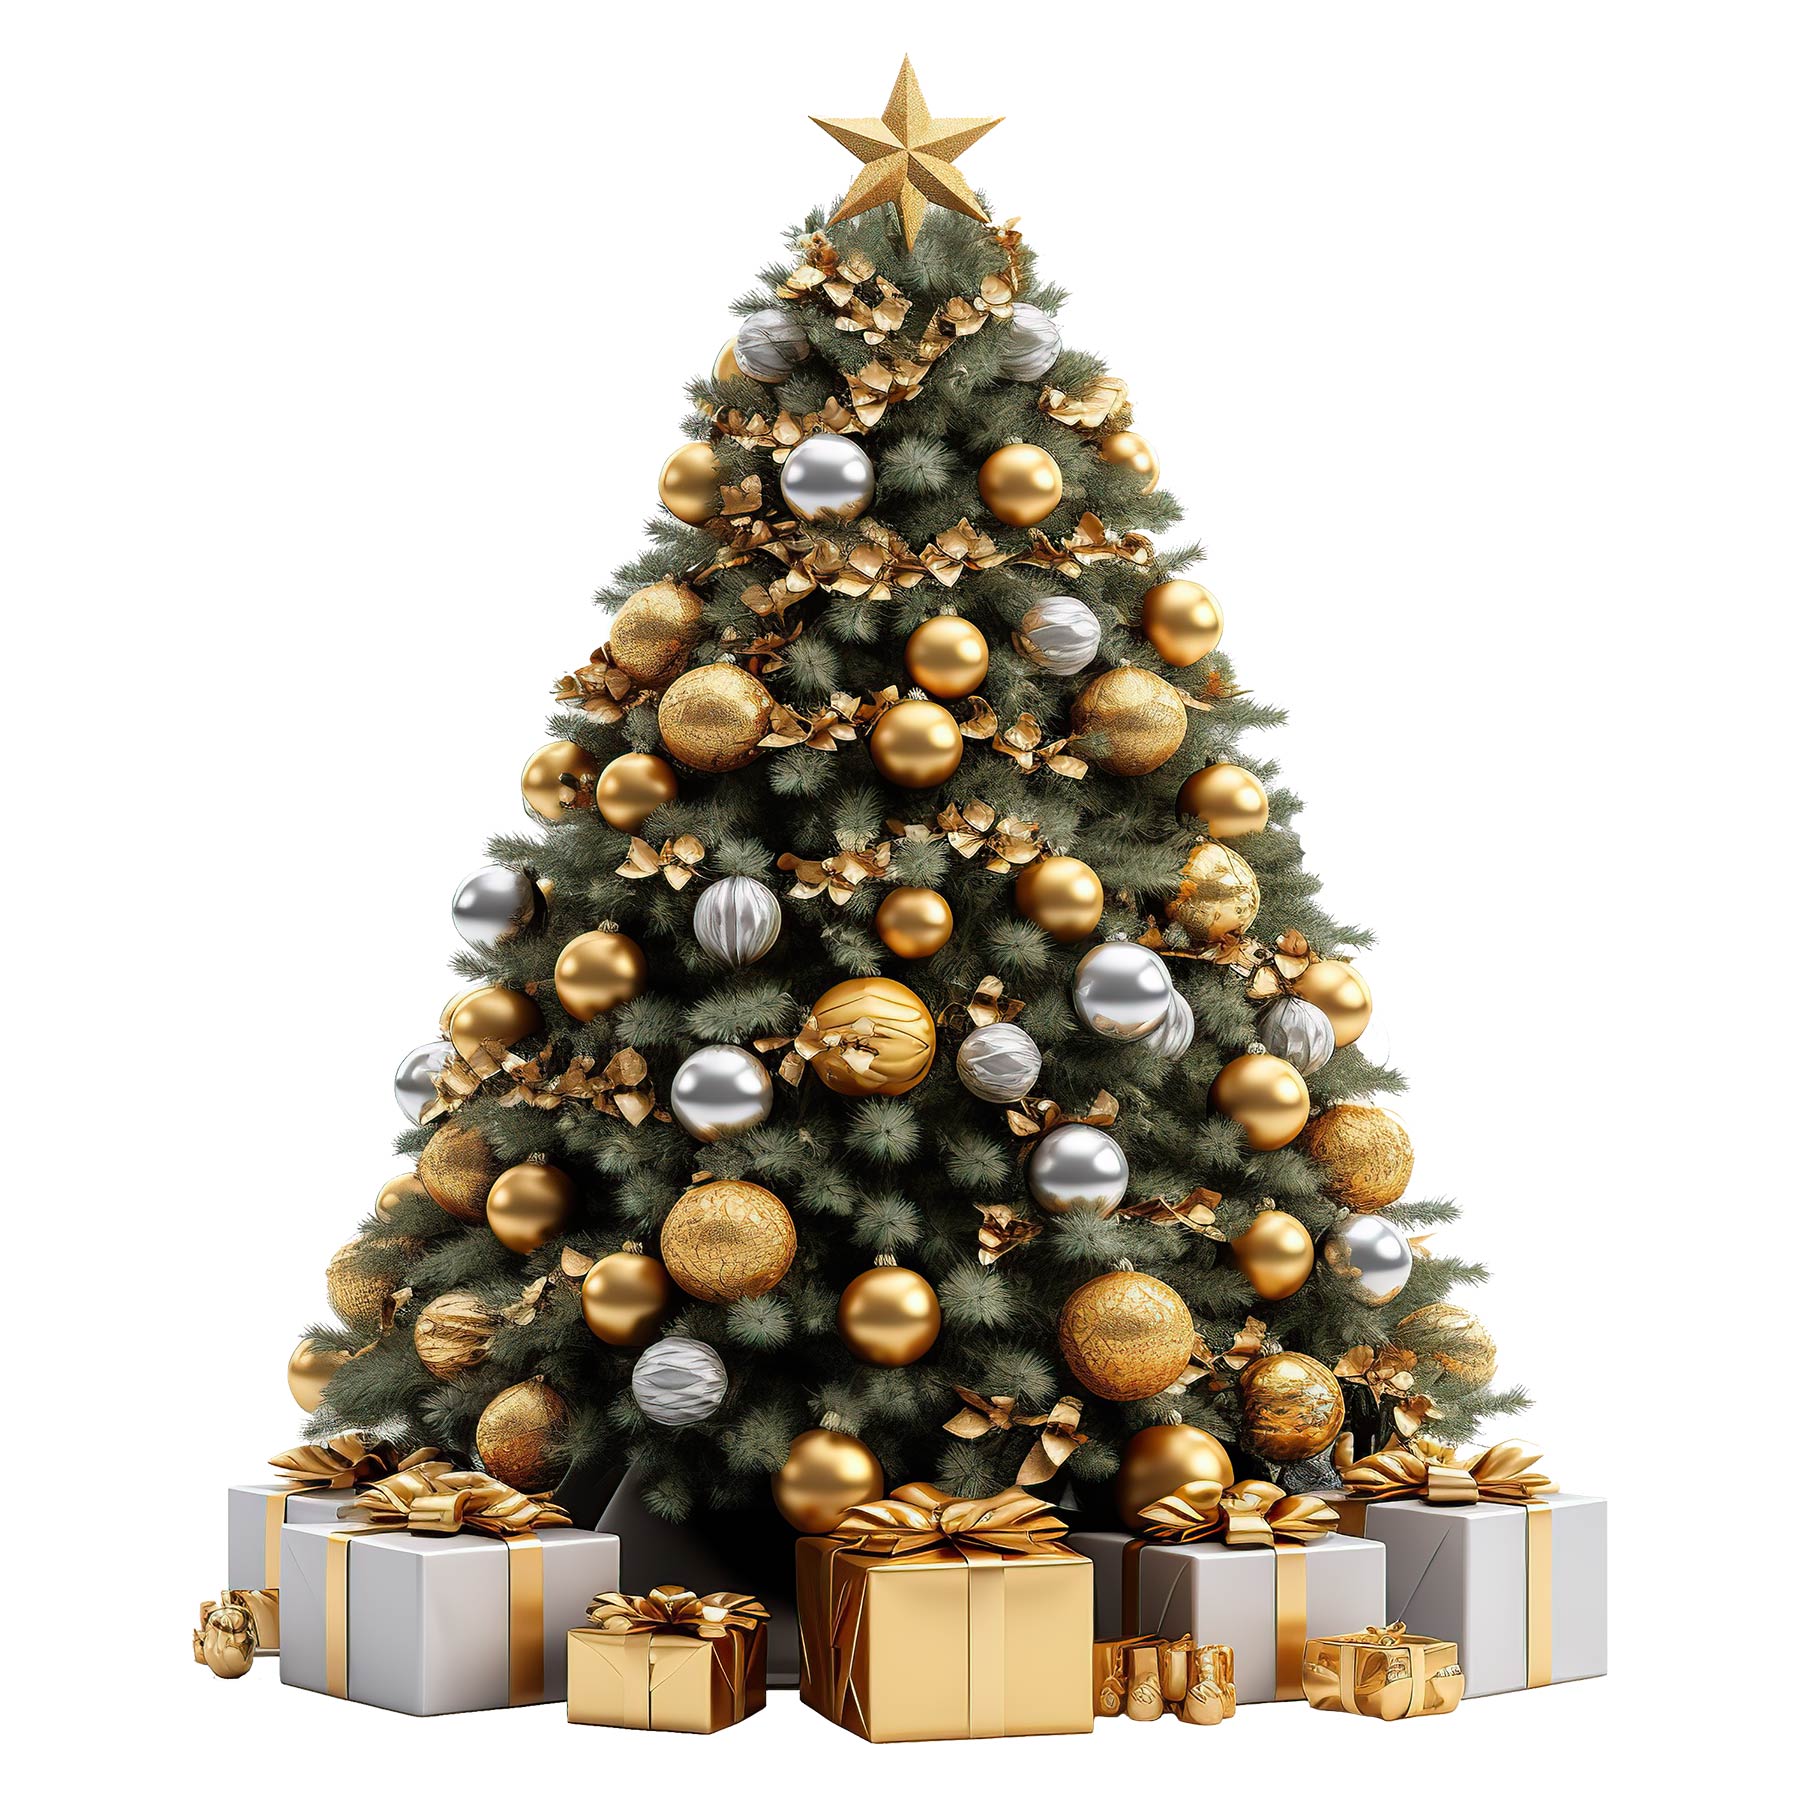 Weihnachtsbaum mit liebevollen Informationen